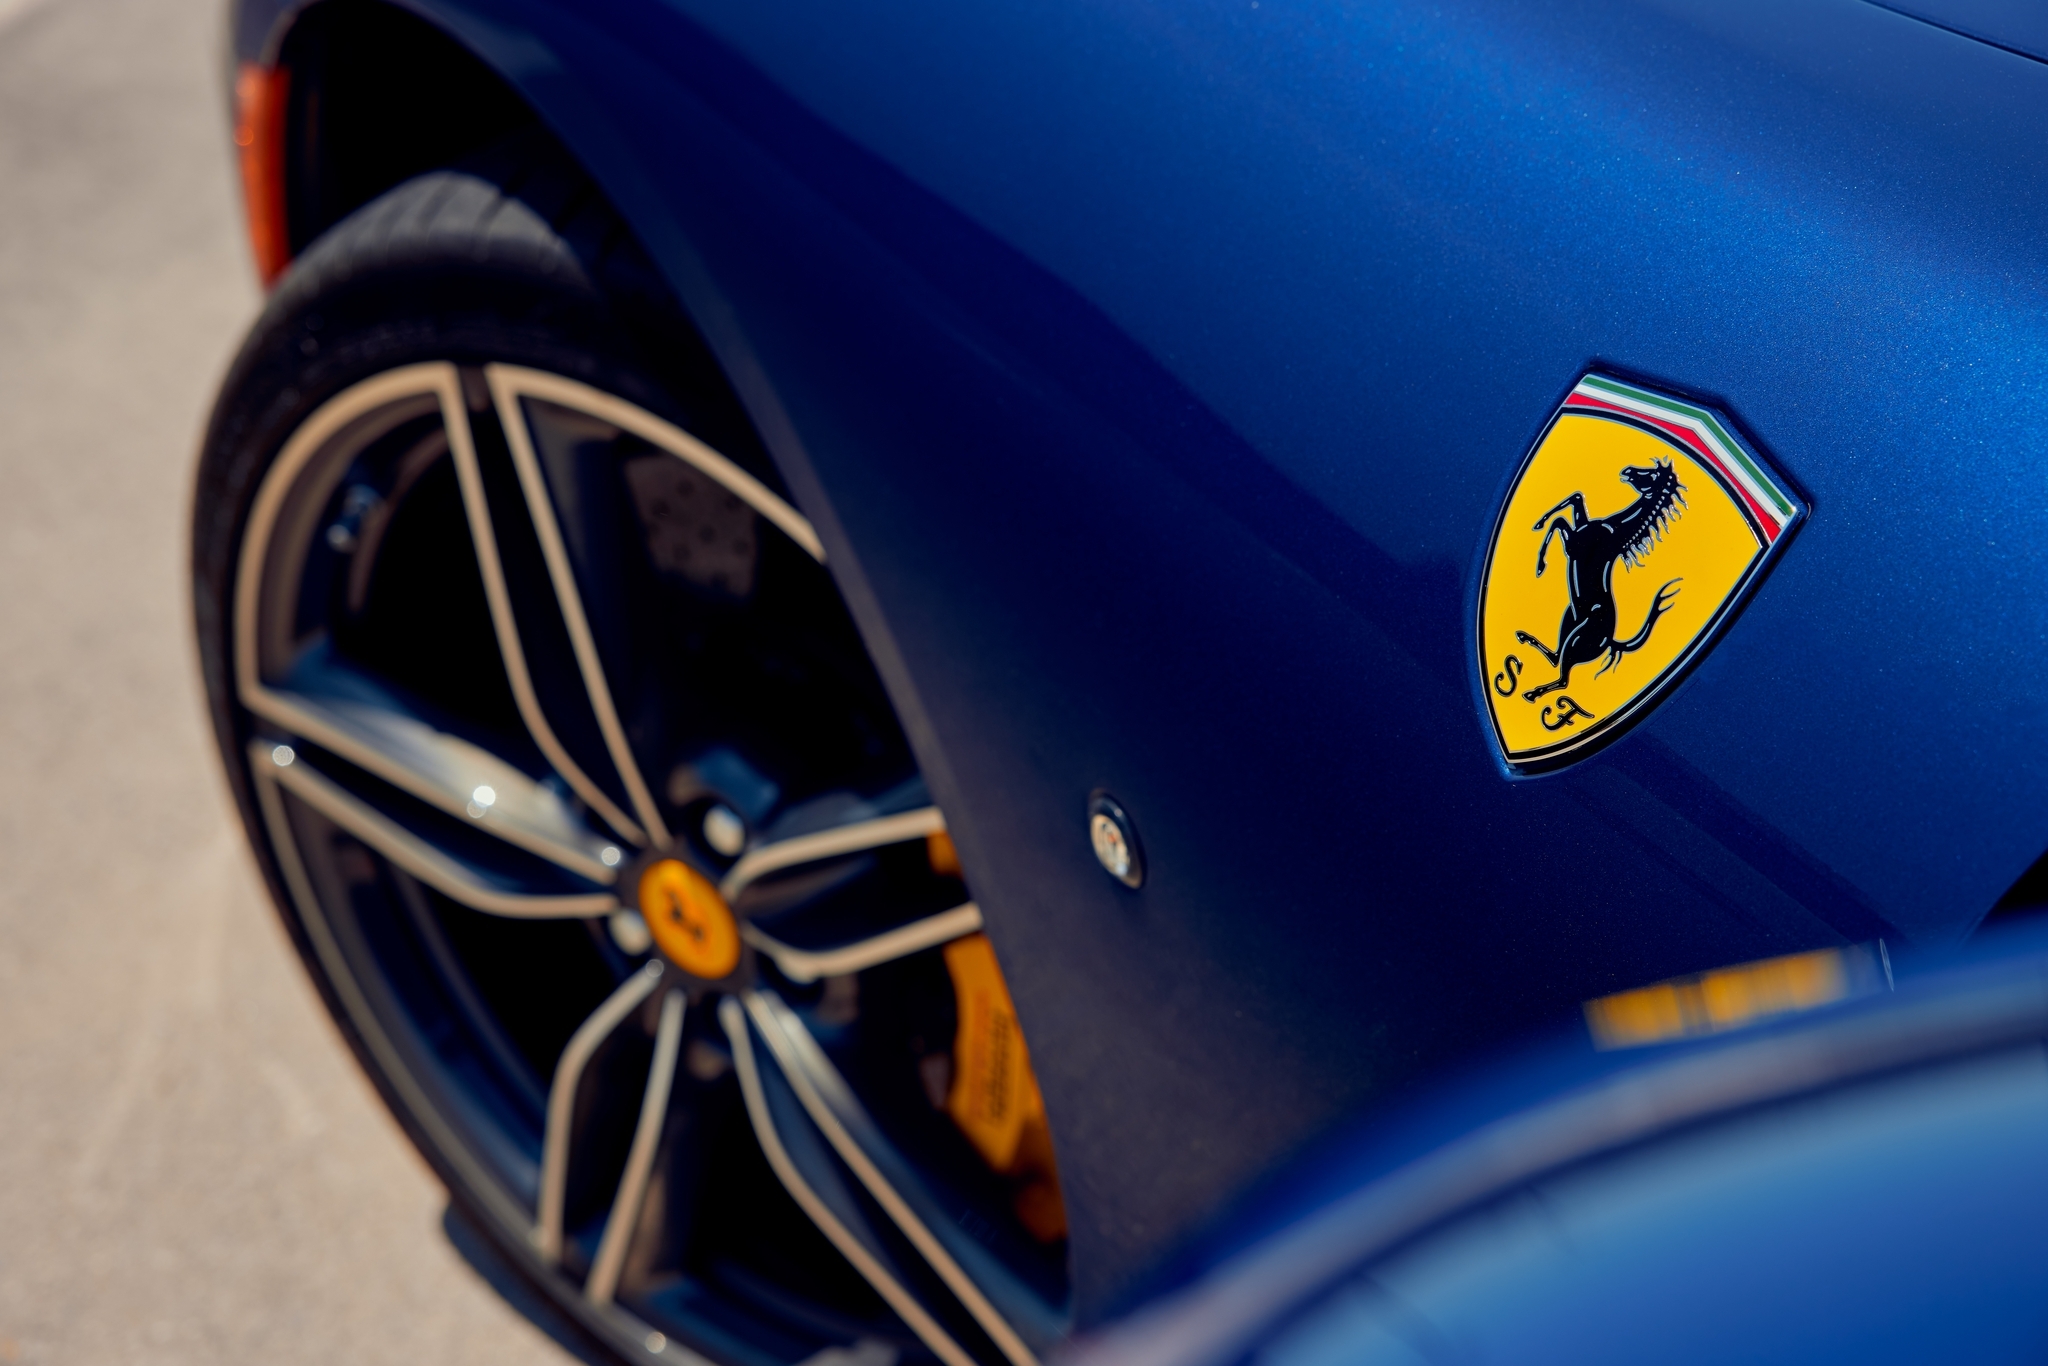 Компания Ferrari готовит к премьере сразу три новинки в наступившем году